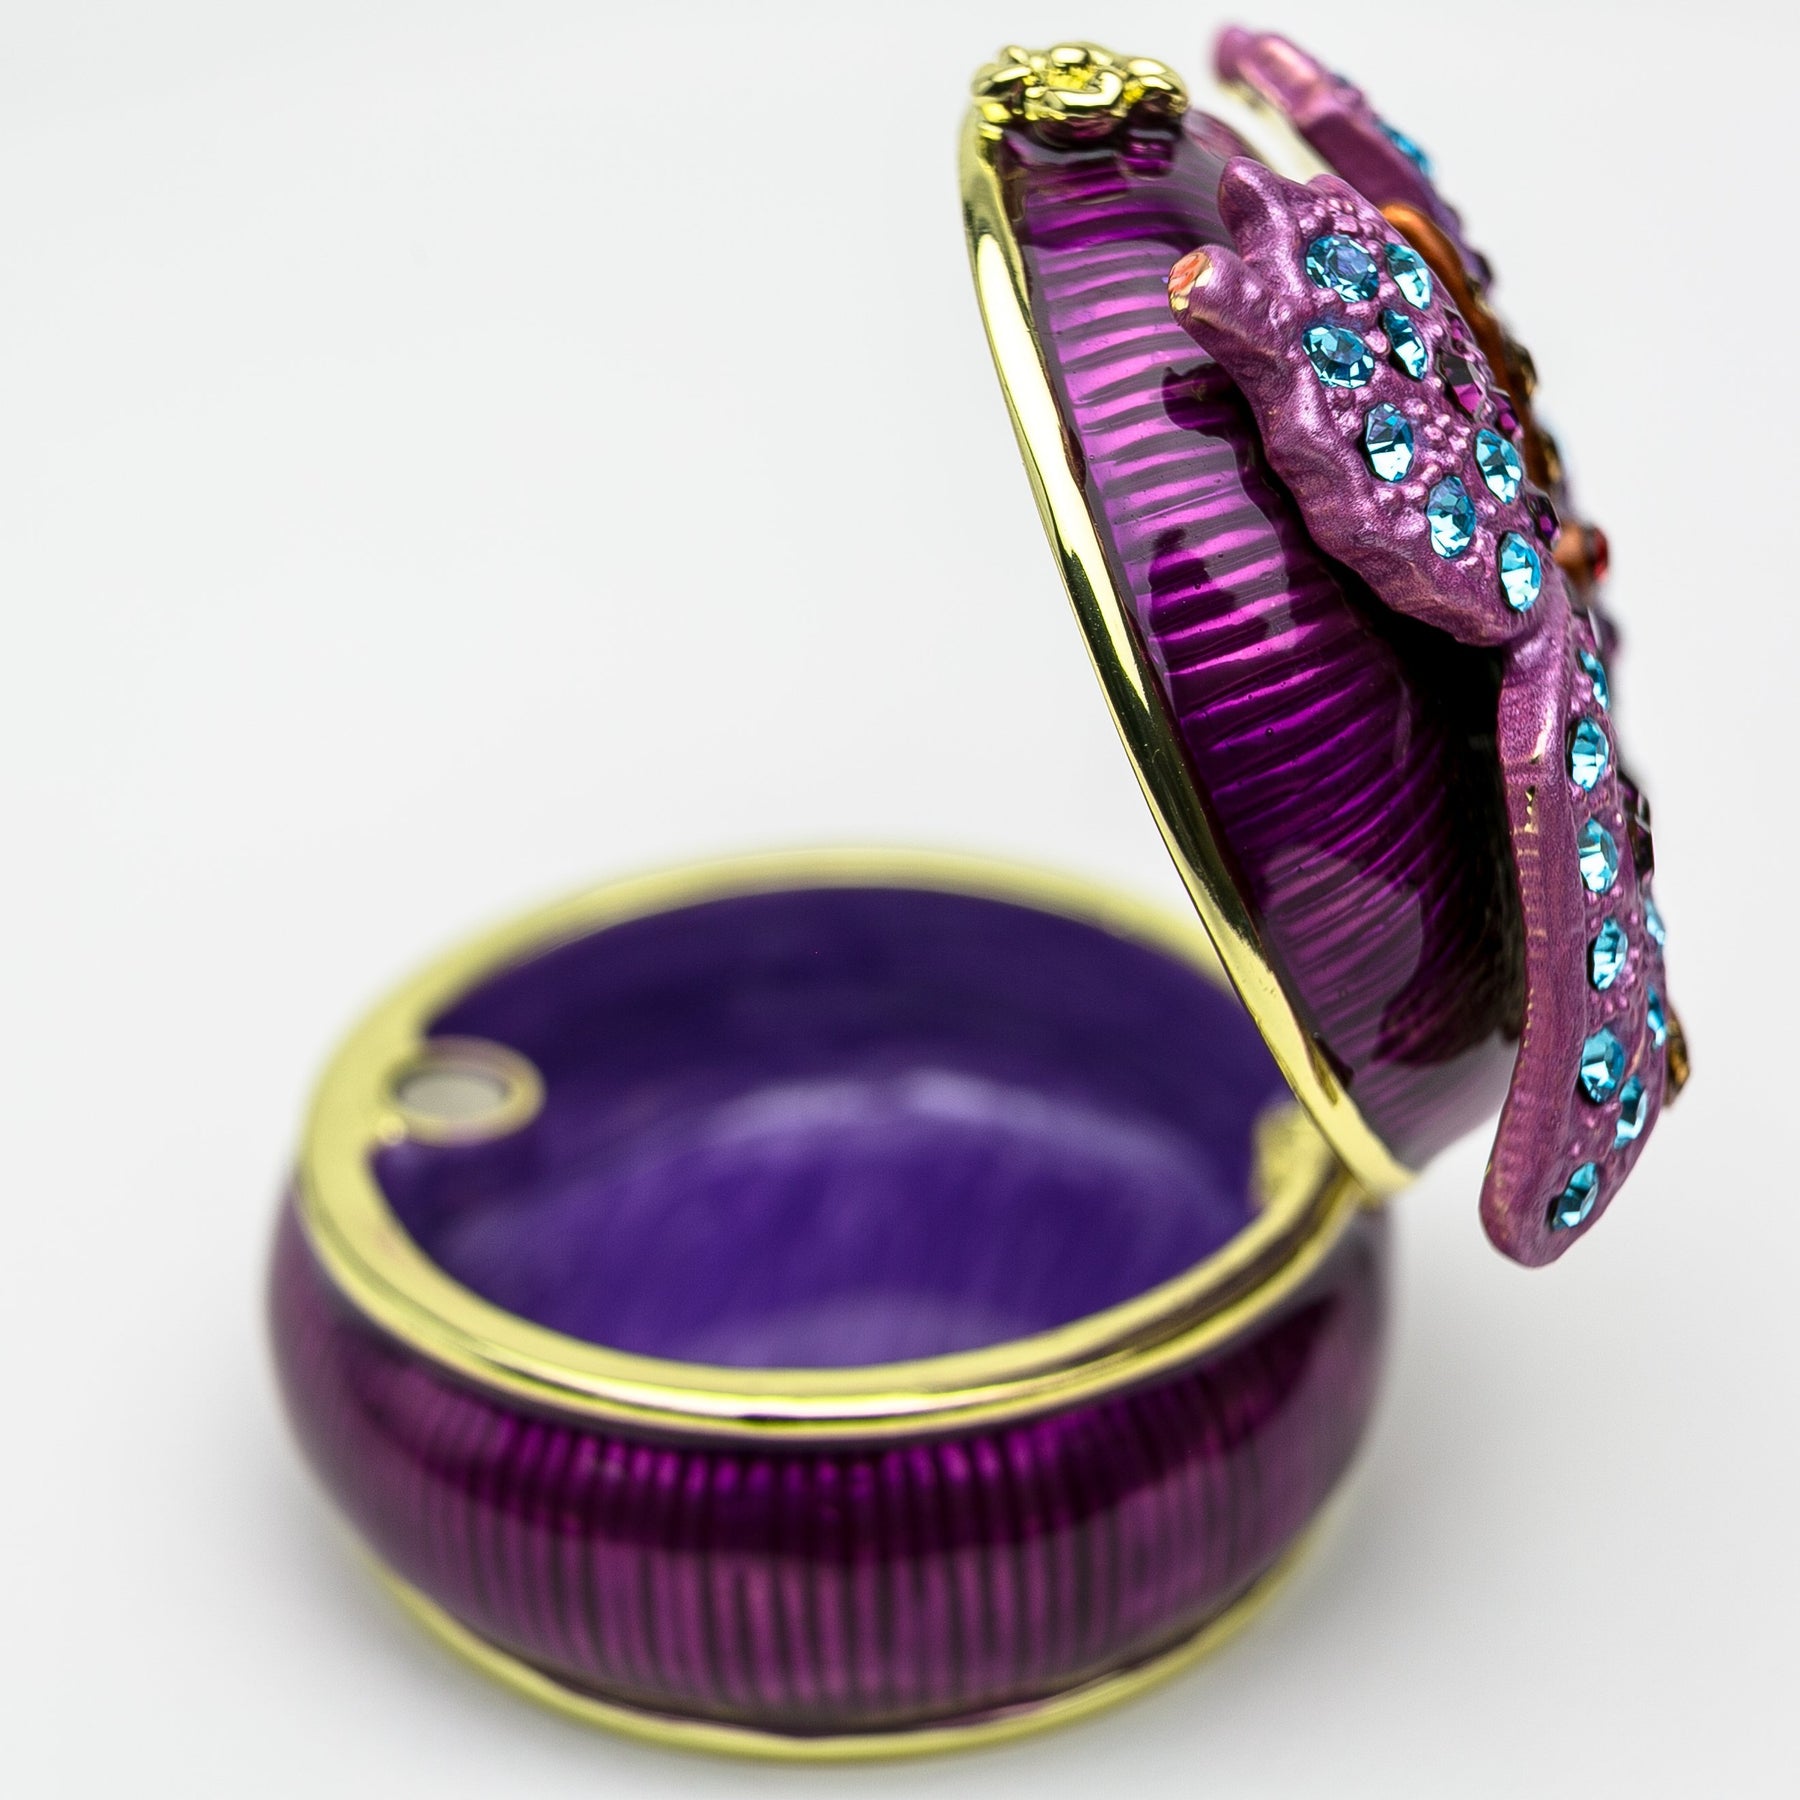 Purple Decorated Trinket Box with Butterfly trinket box Keren Kopal